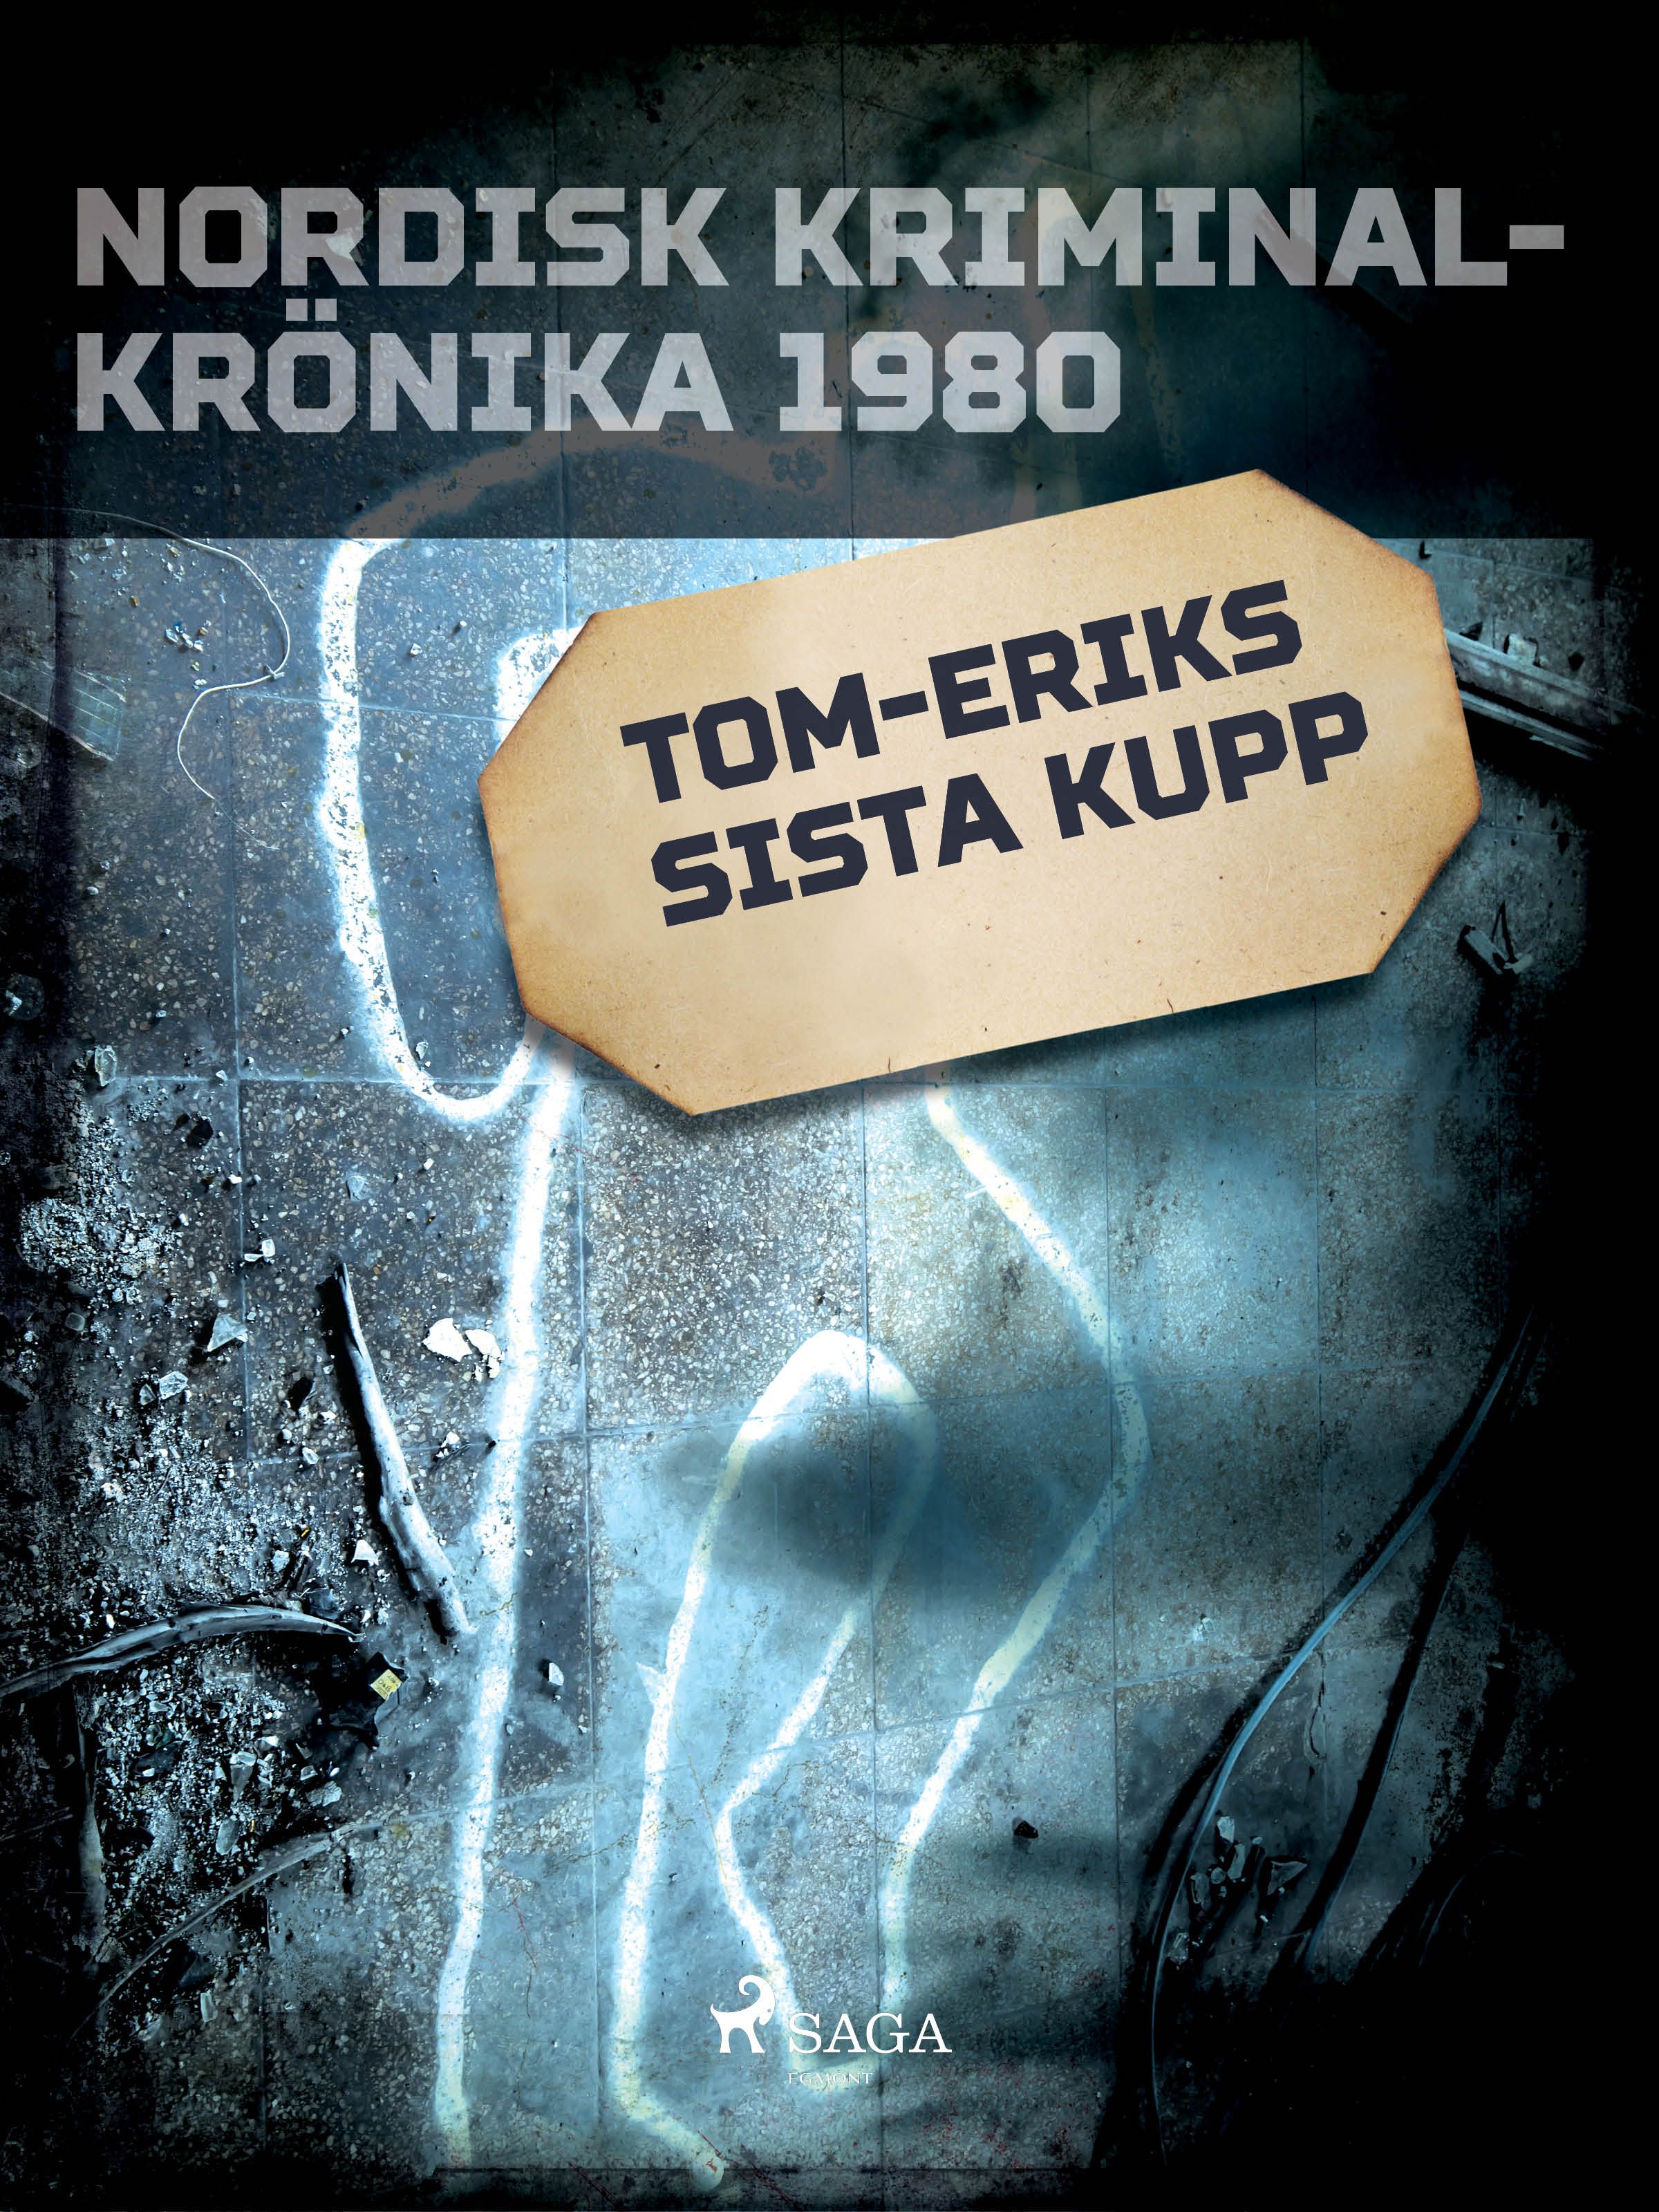 Tom-Eriks sista kupp, e-bog af Diverse